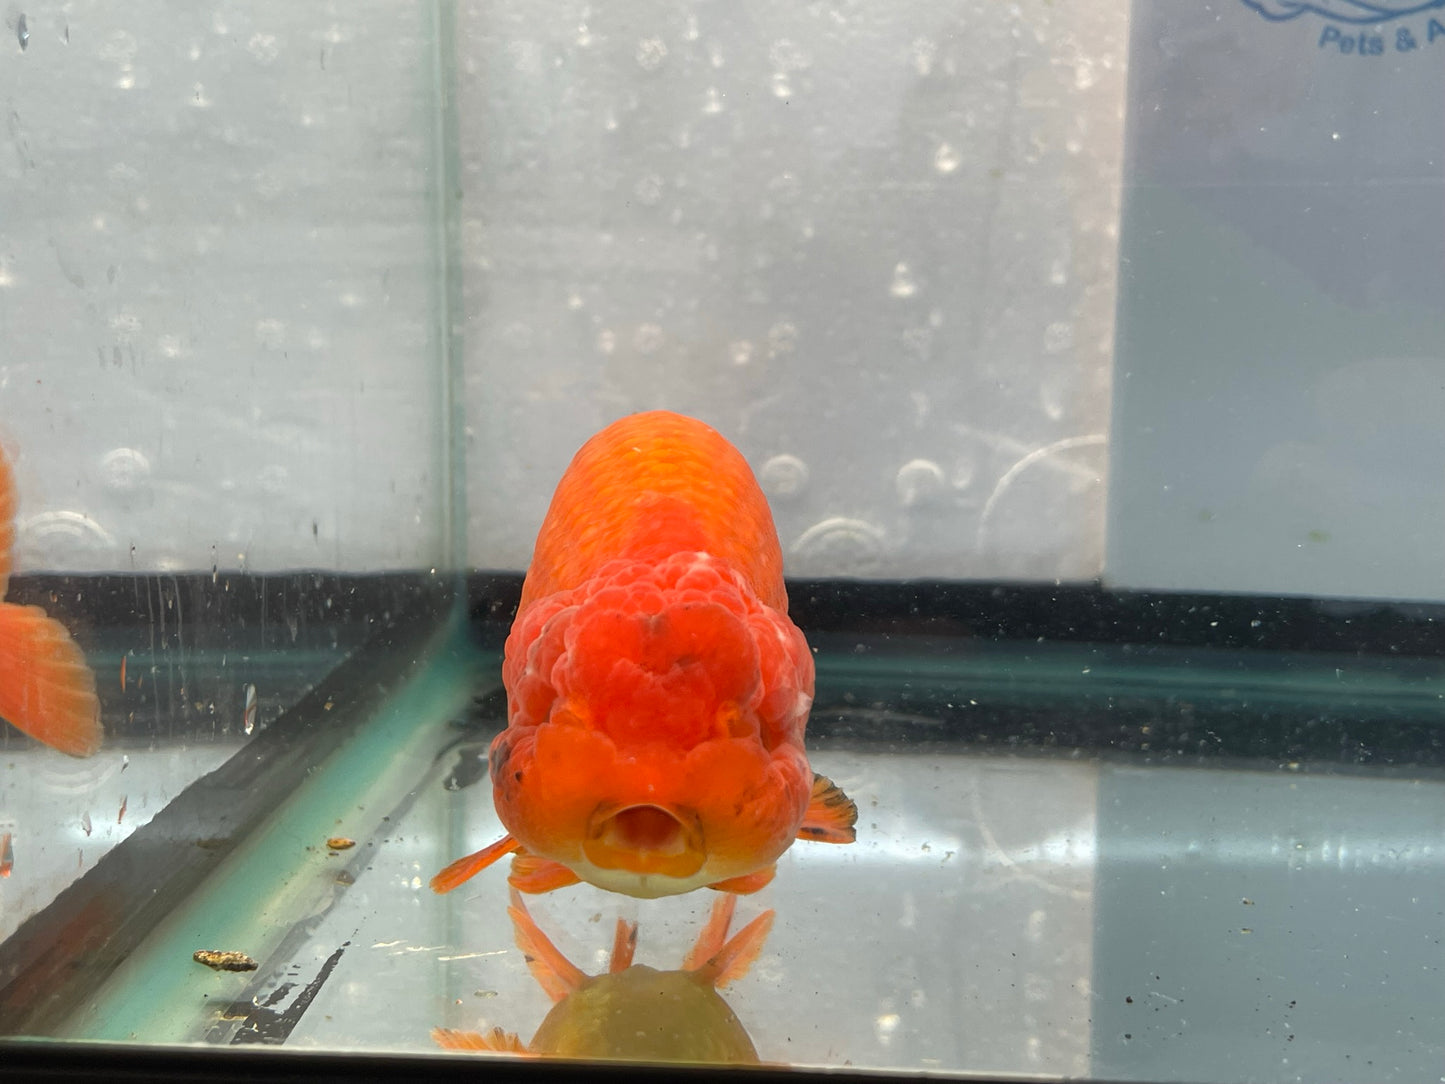 Jumbo Ranchu Red 12-13cm Fancy Goldfish (Fish In Photo) #11